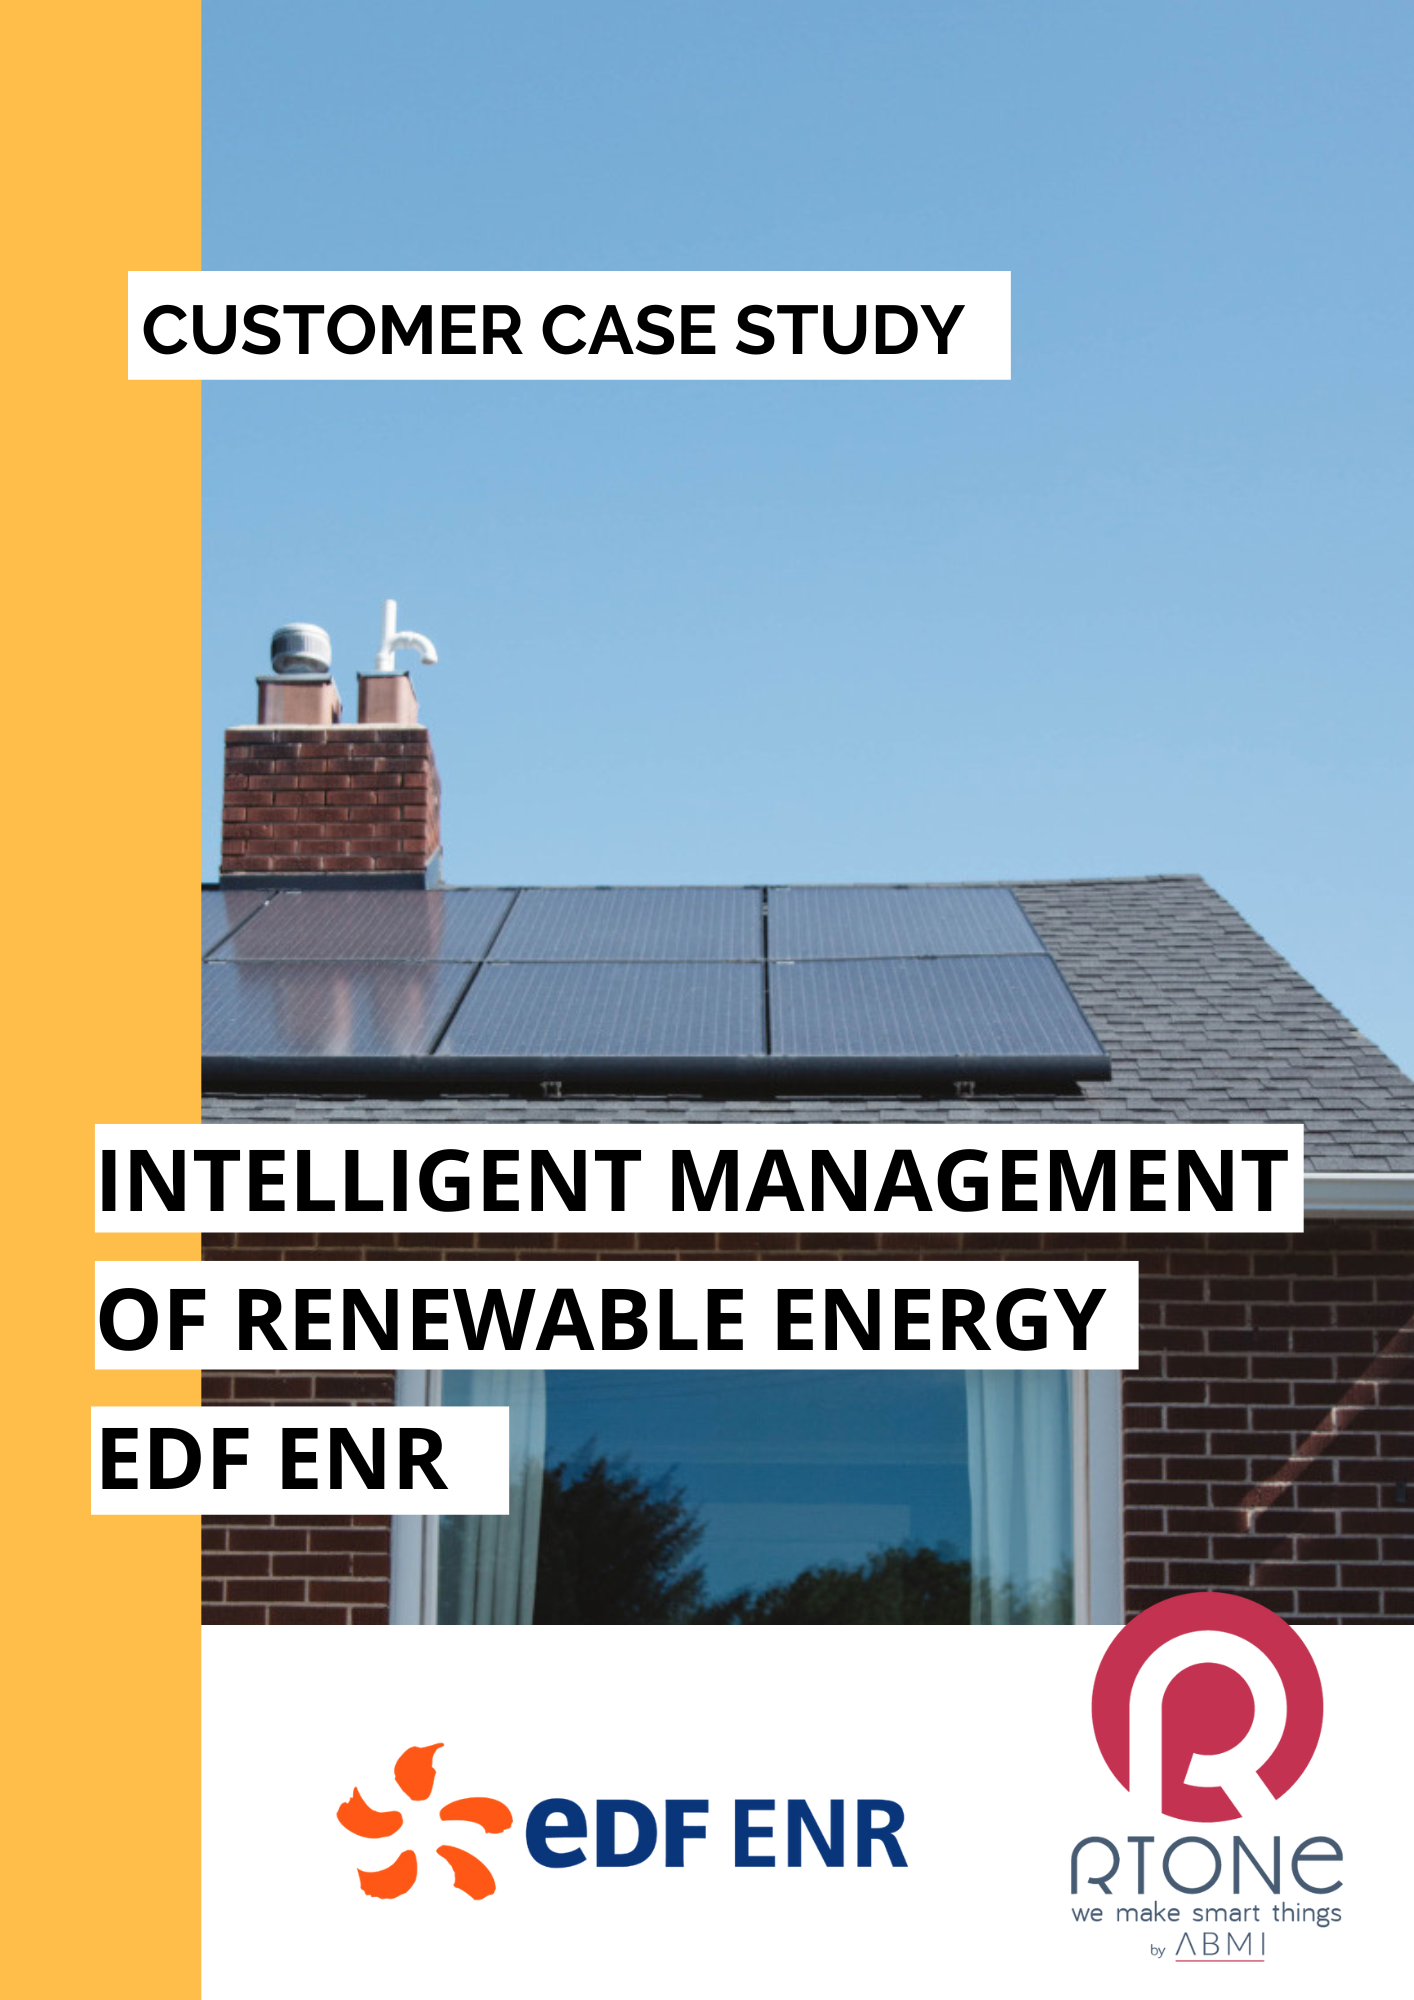 Customer case study EDF ENR